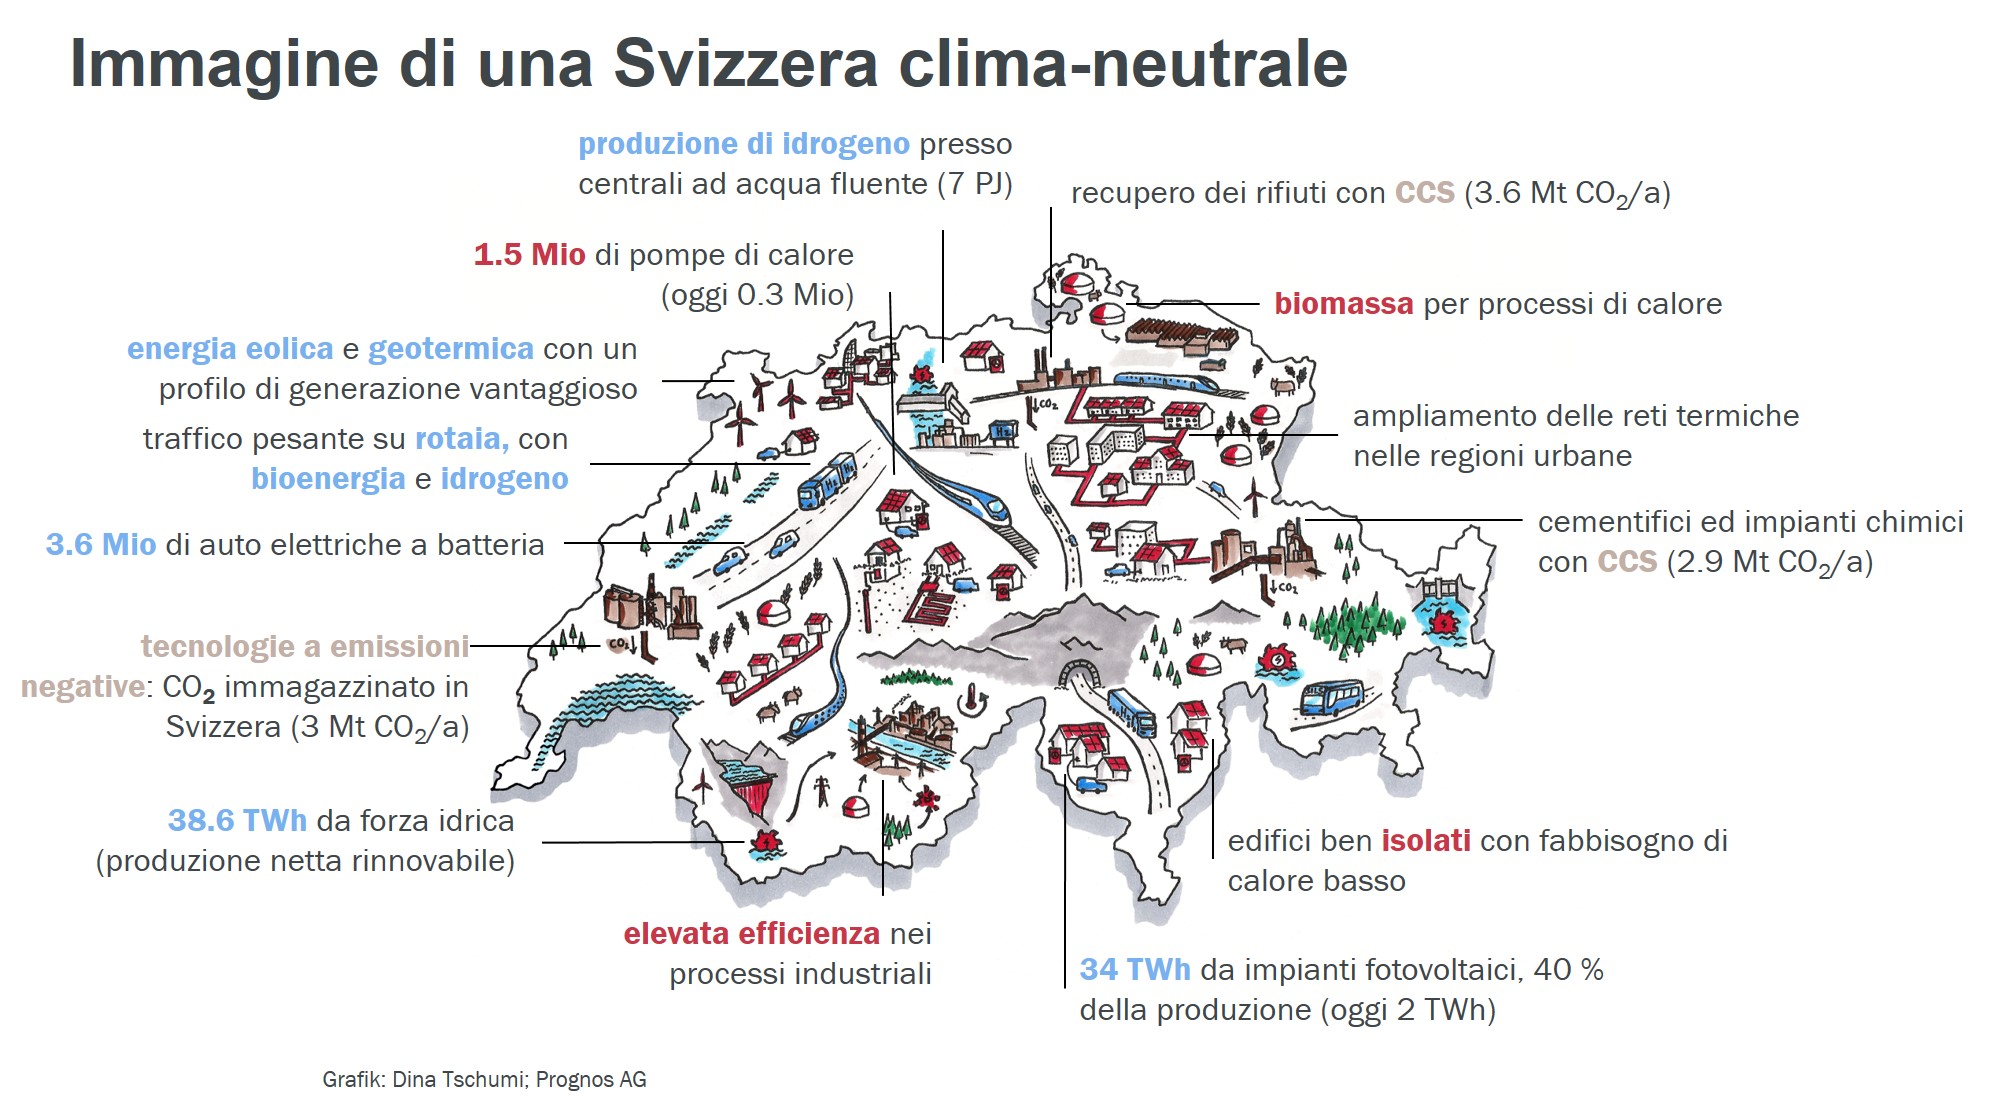 Svizzera, notizie e prospettive - SWI